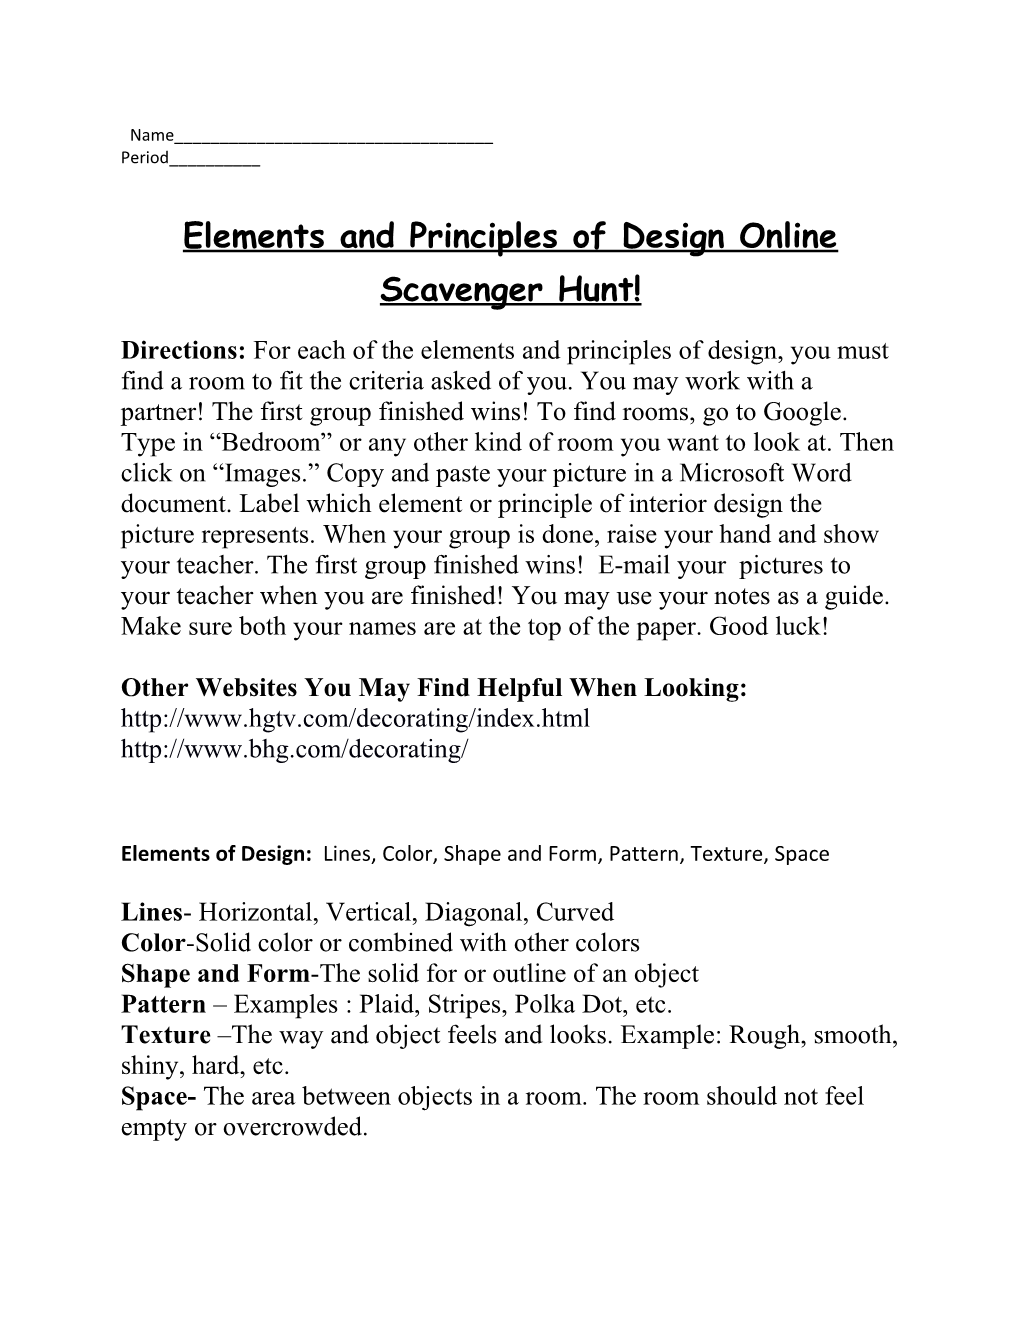 Elements and Principles of Design Online Scavenger Hunt!